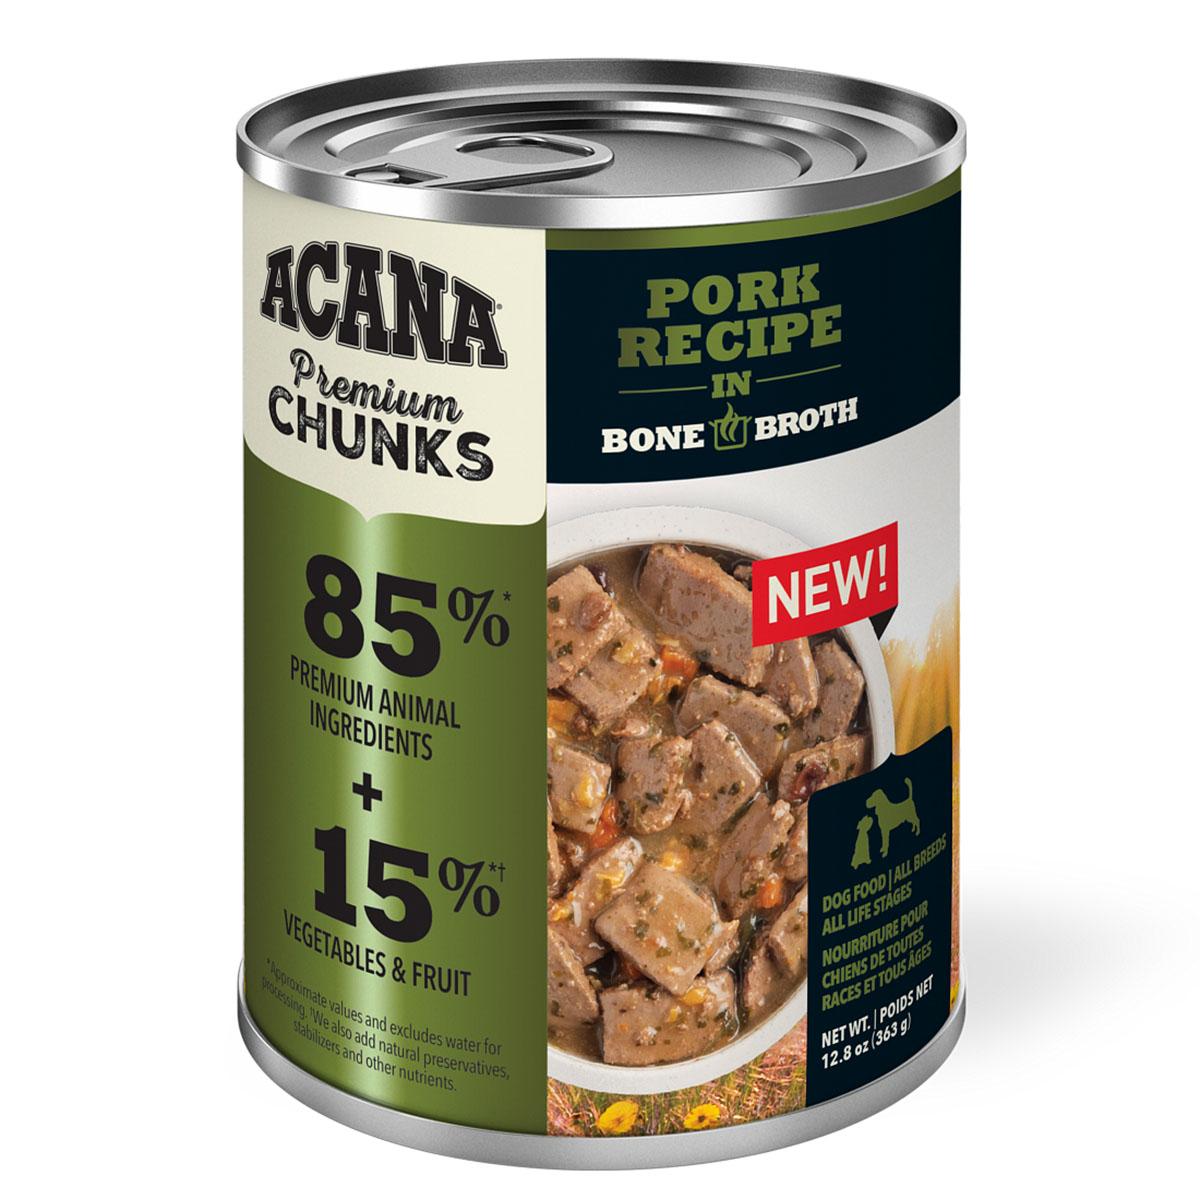 Acana Premium Chunks Pork Recipe in Bone Broth Canned Dog Food 